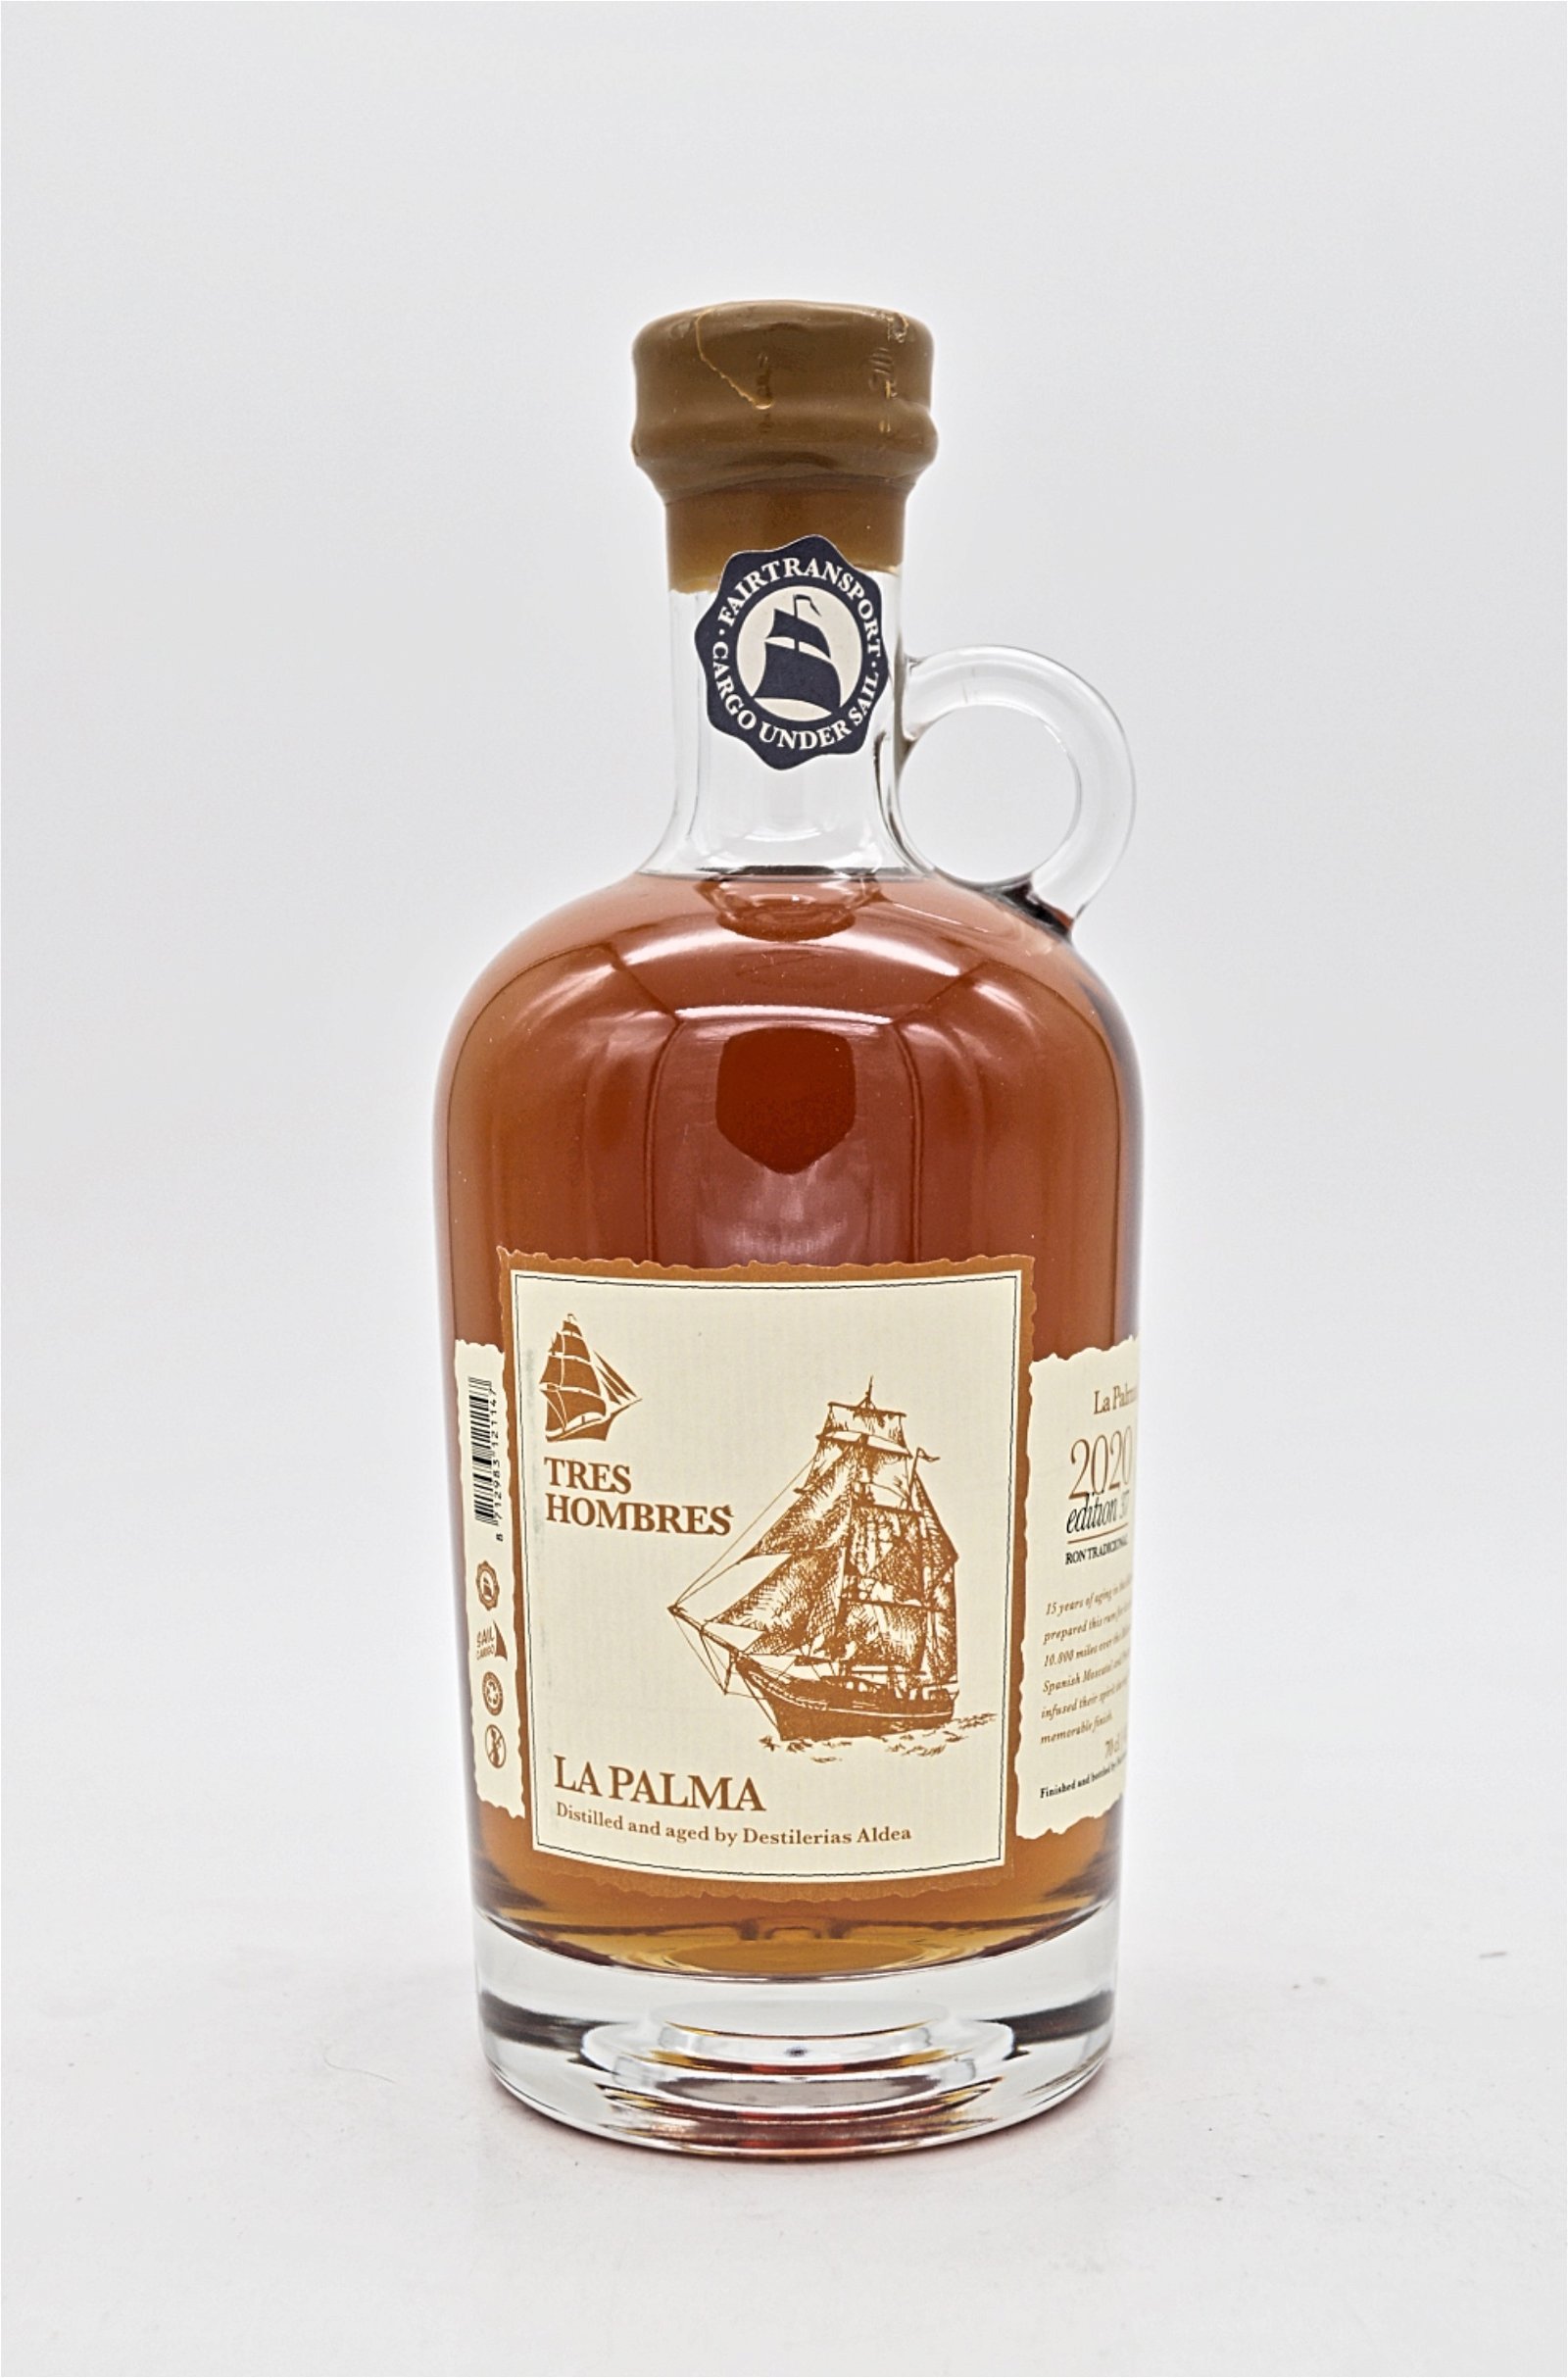 Tres Hombres XV Jahre 2020 Edition 37 La Palma Quince Santis Blend Rum